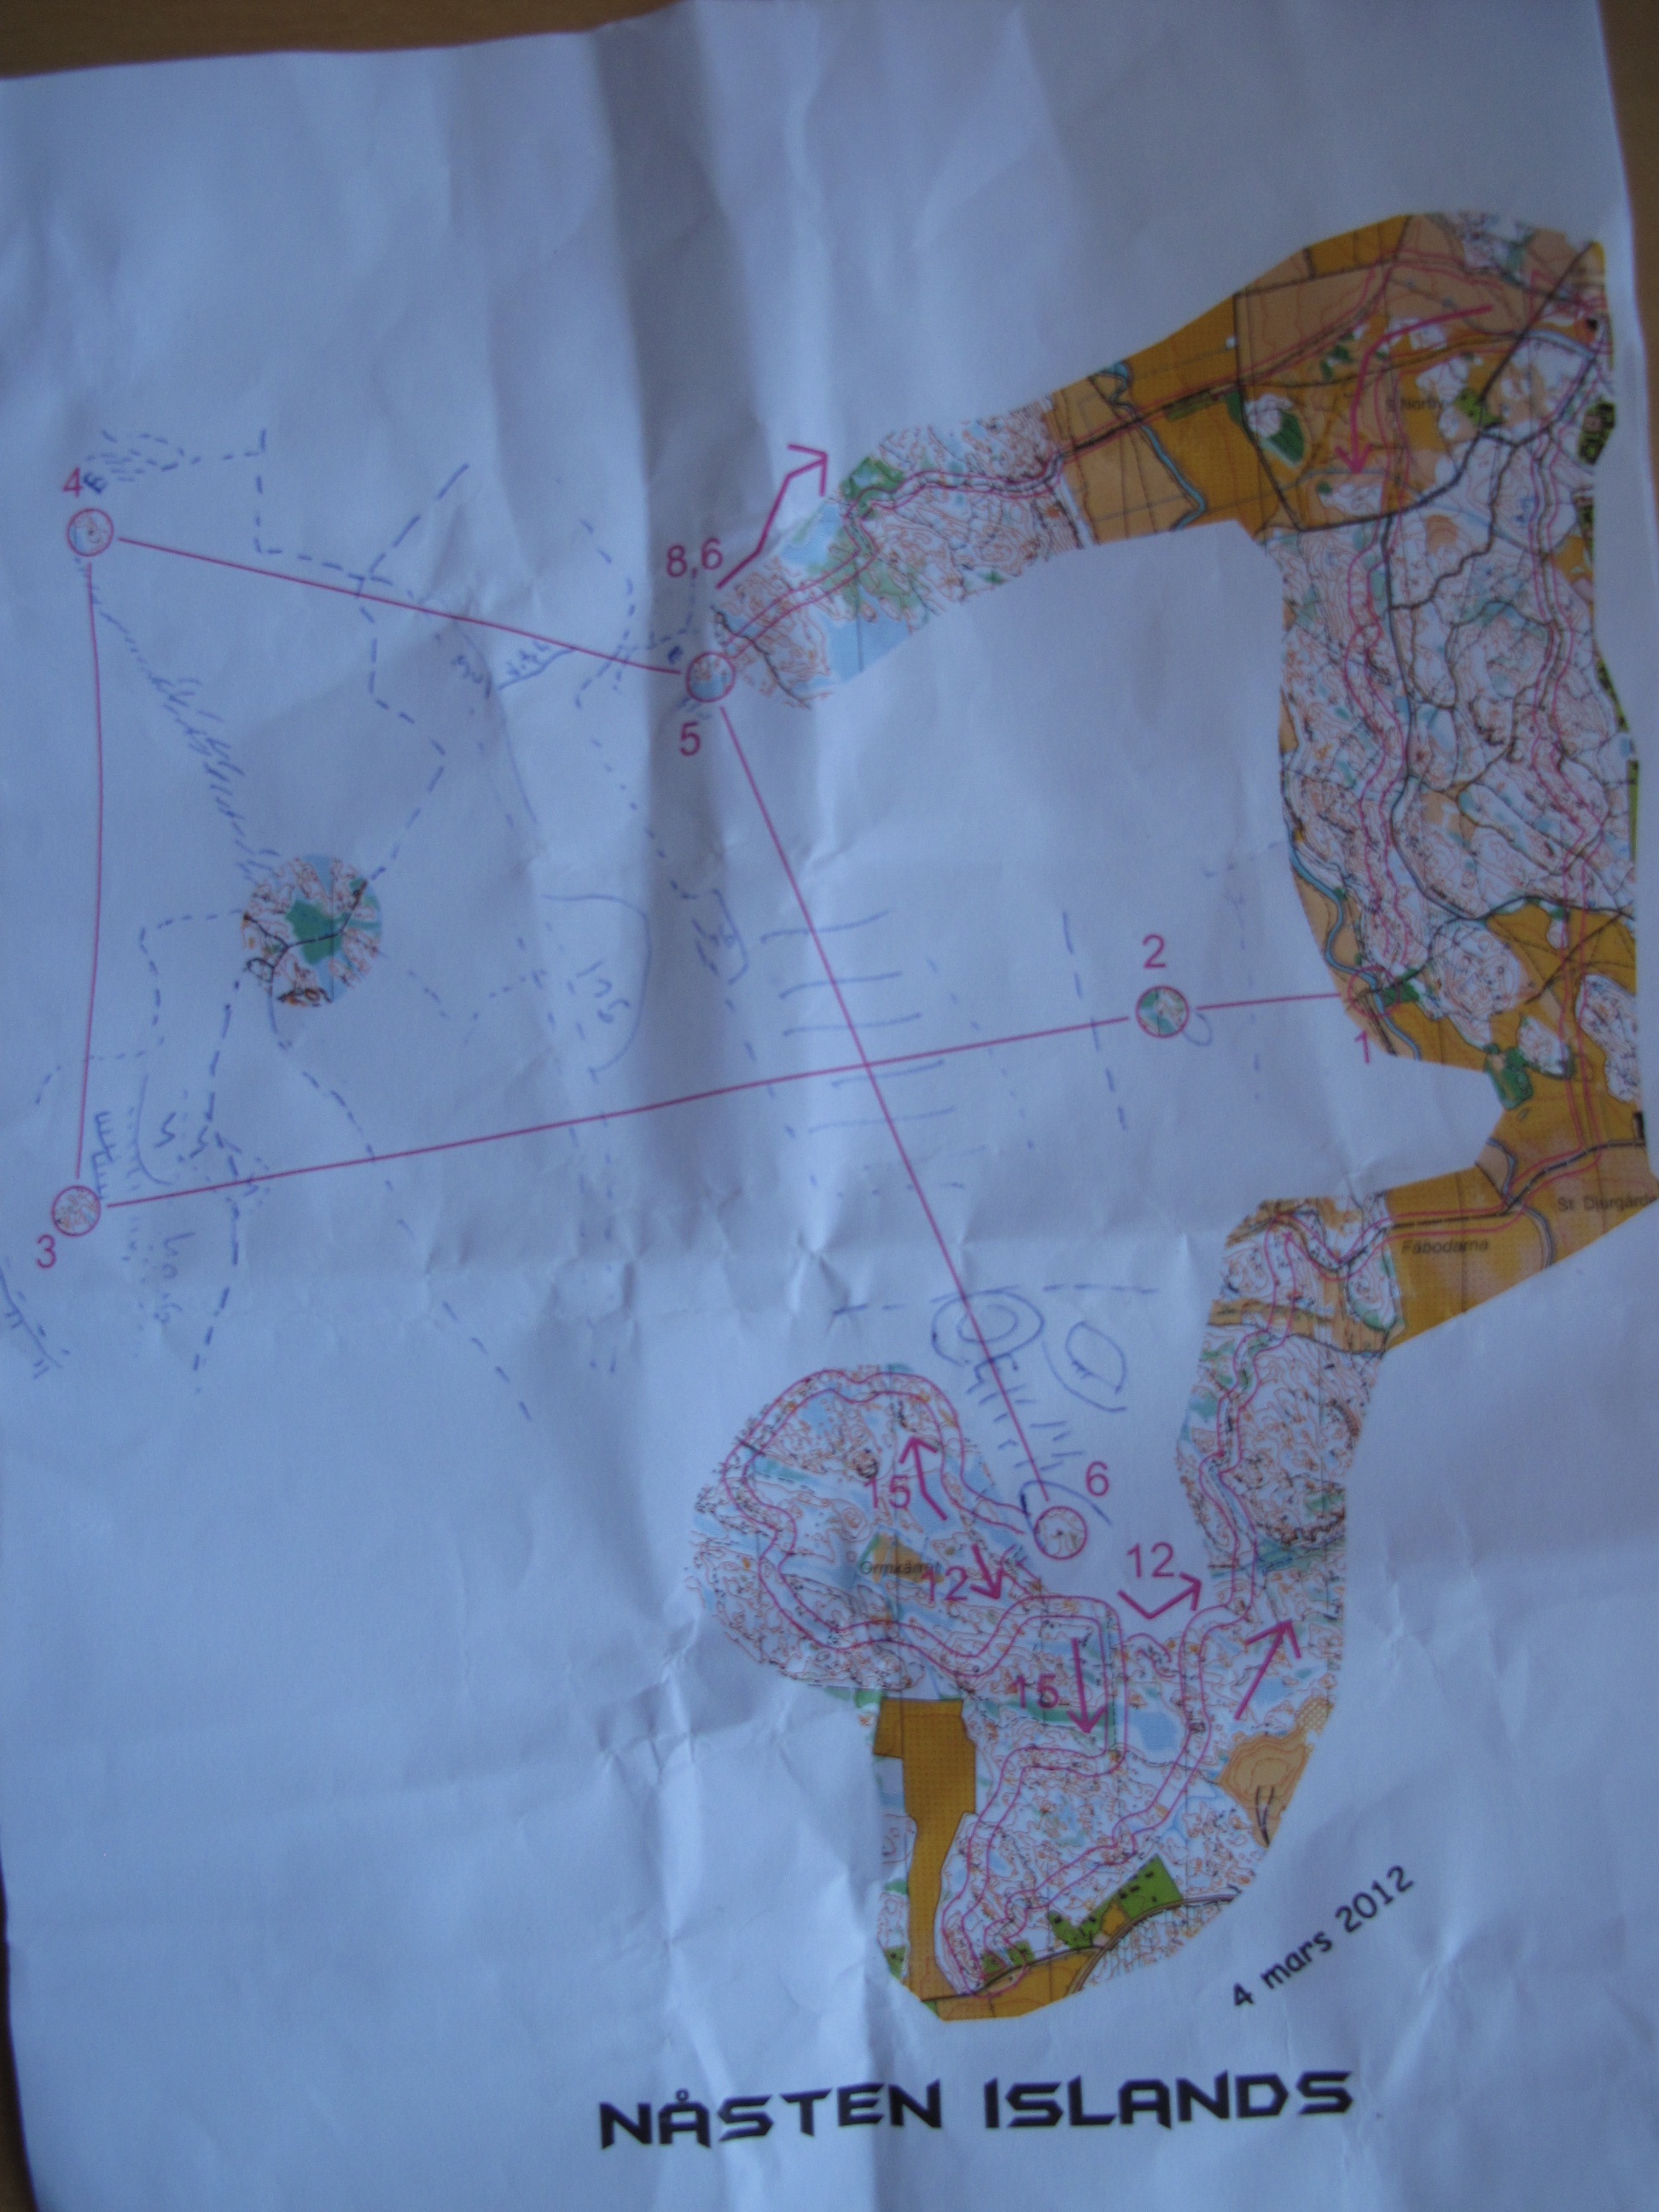 Nåsten Islands Training (2012-03-04)